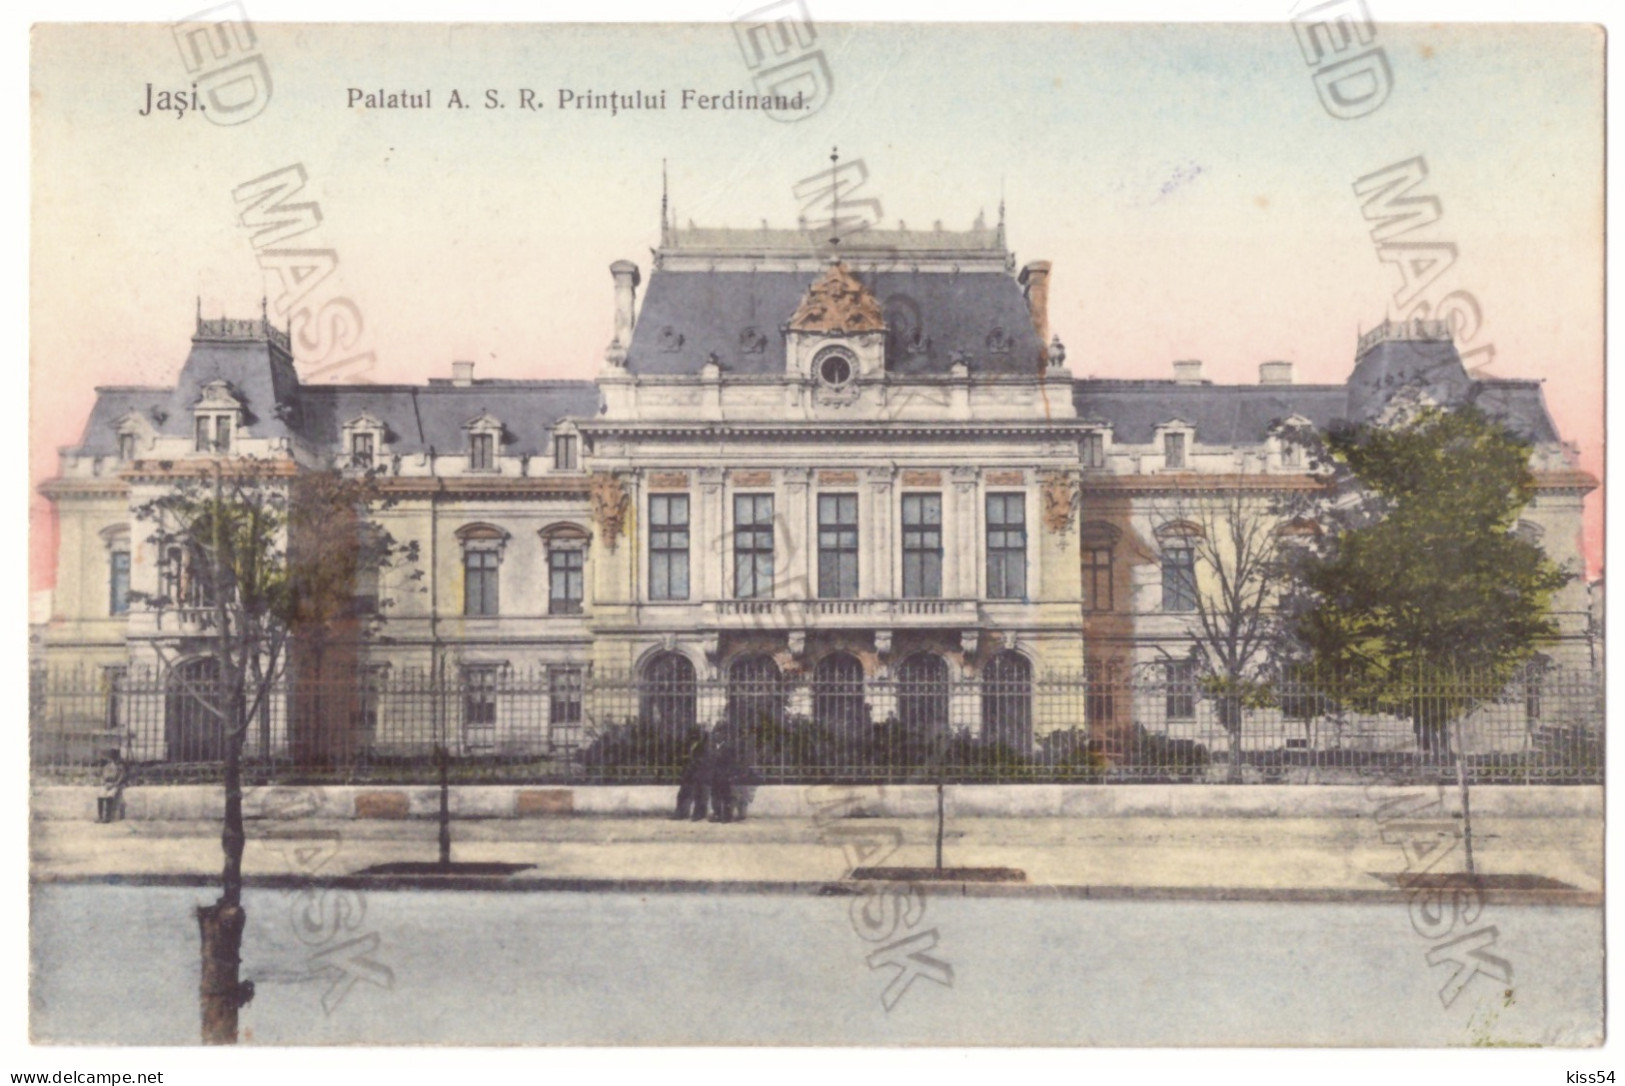 RO 36 - 21529 IASI, Palatul Ferdinand, Romania - Old Postcard - Used - 1908 - Rumänien